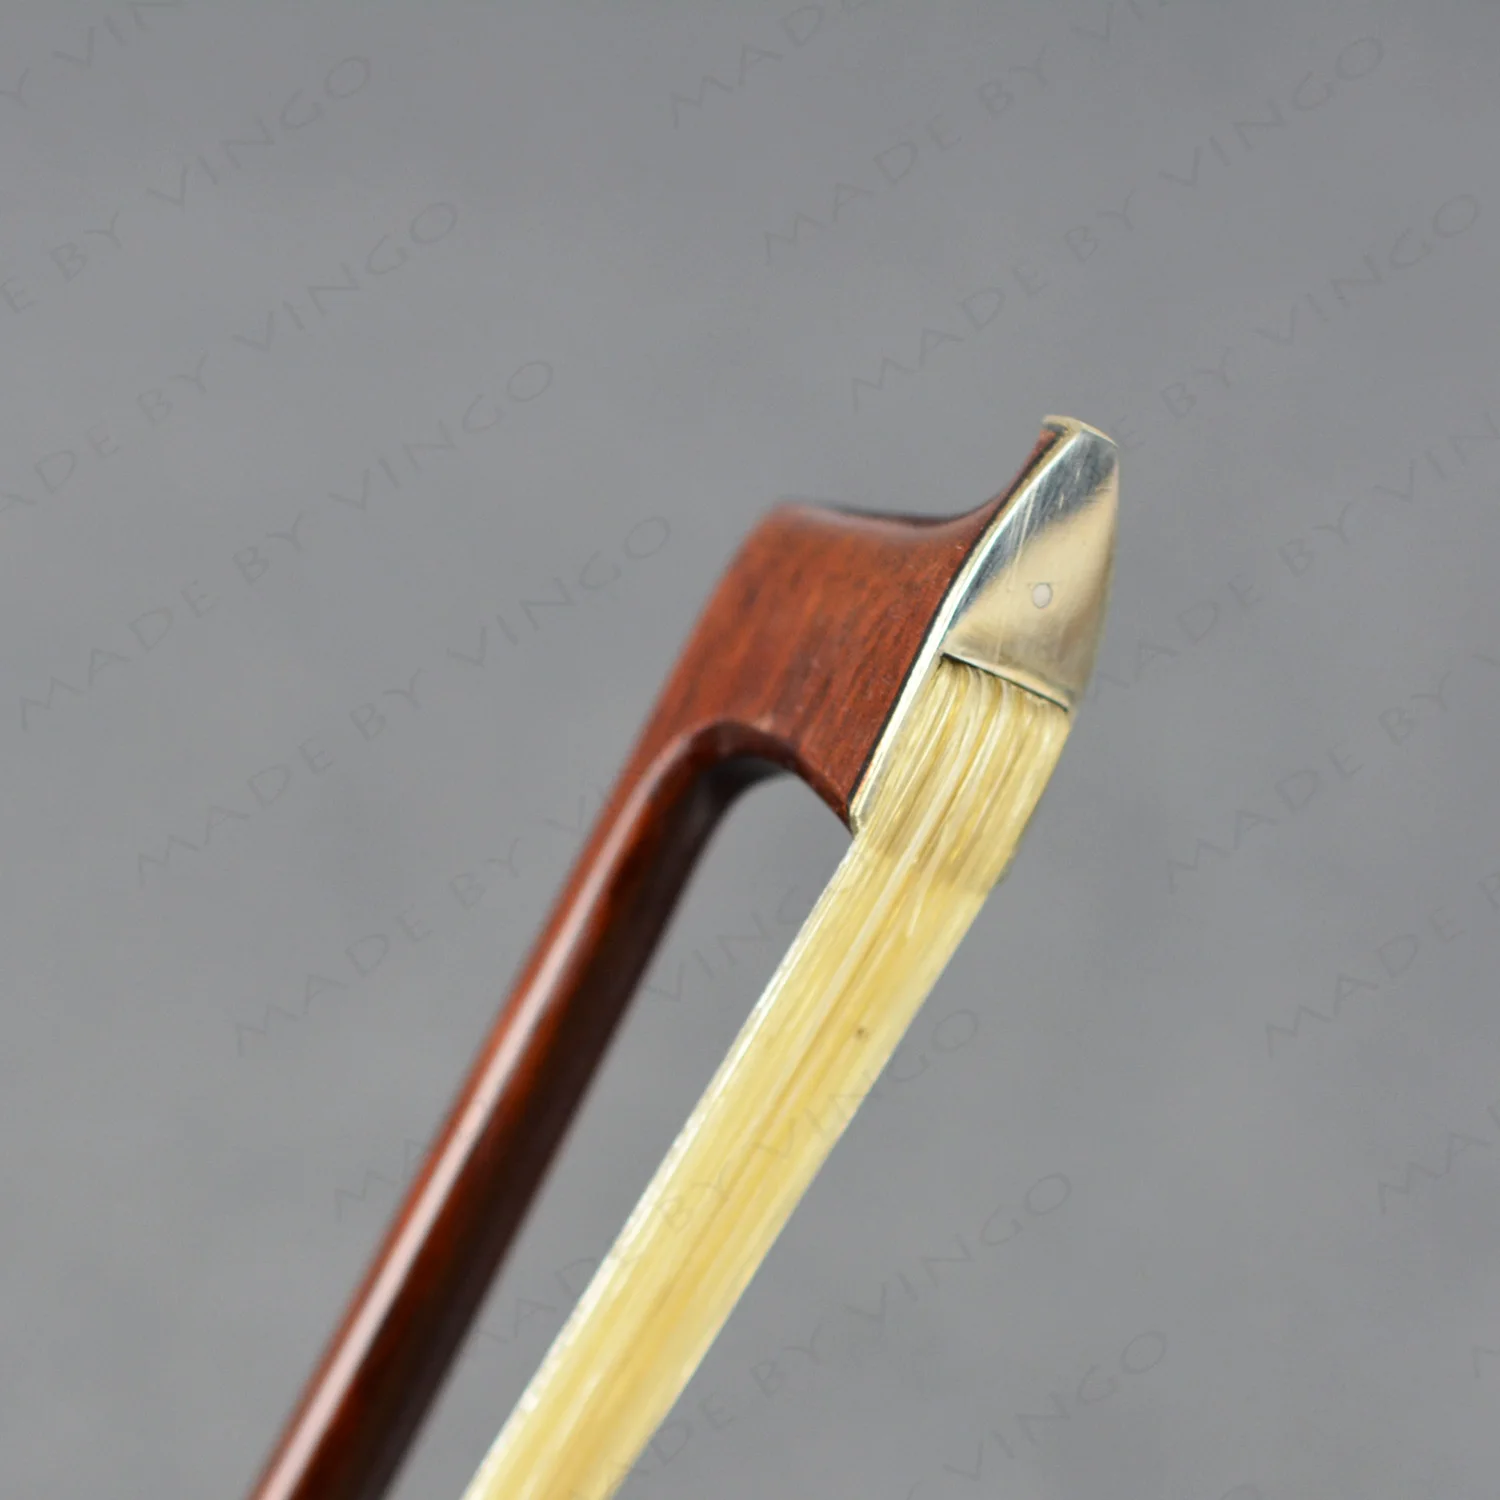 NEW Master Pernambuco Violin Bow TOP Craftsmanship 4/4 size Silver Tips 